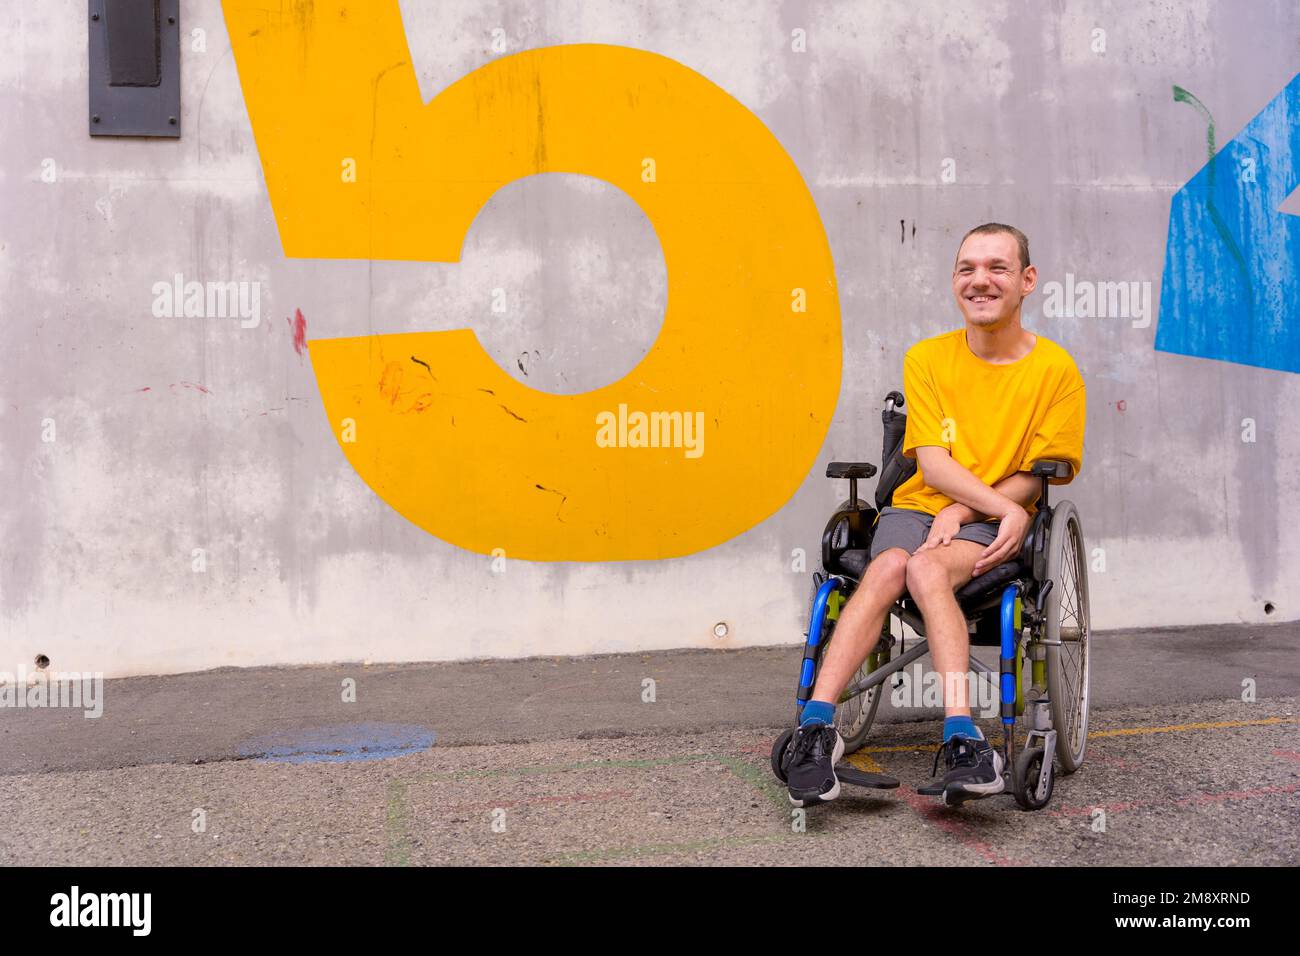 Behinderte Person in einem öffentlichen Park im Rollstuhl, trägt ein gelbes, lächelndes T-Shirt Stockfoto